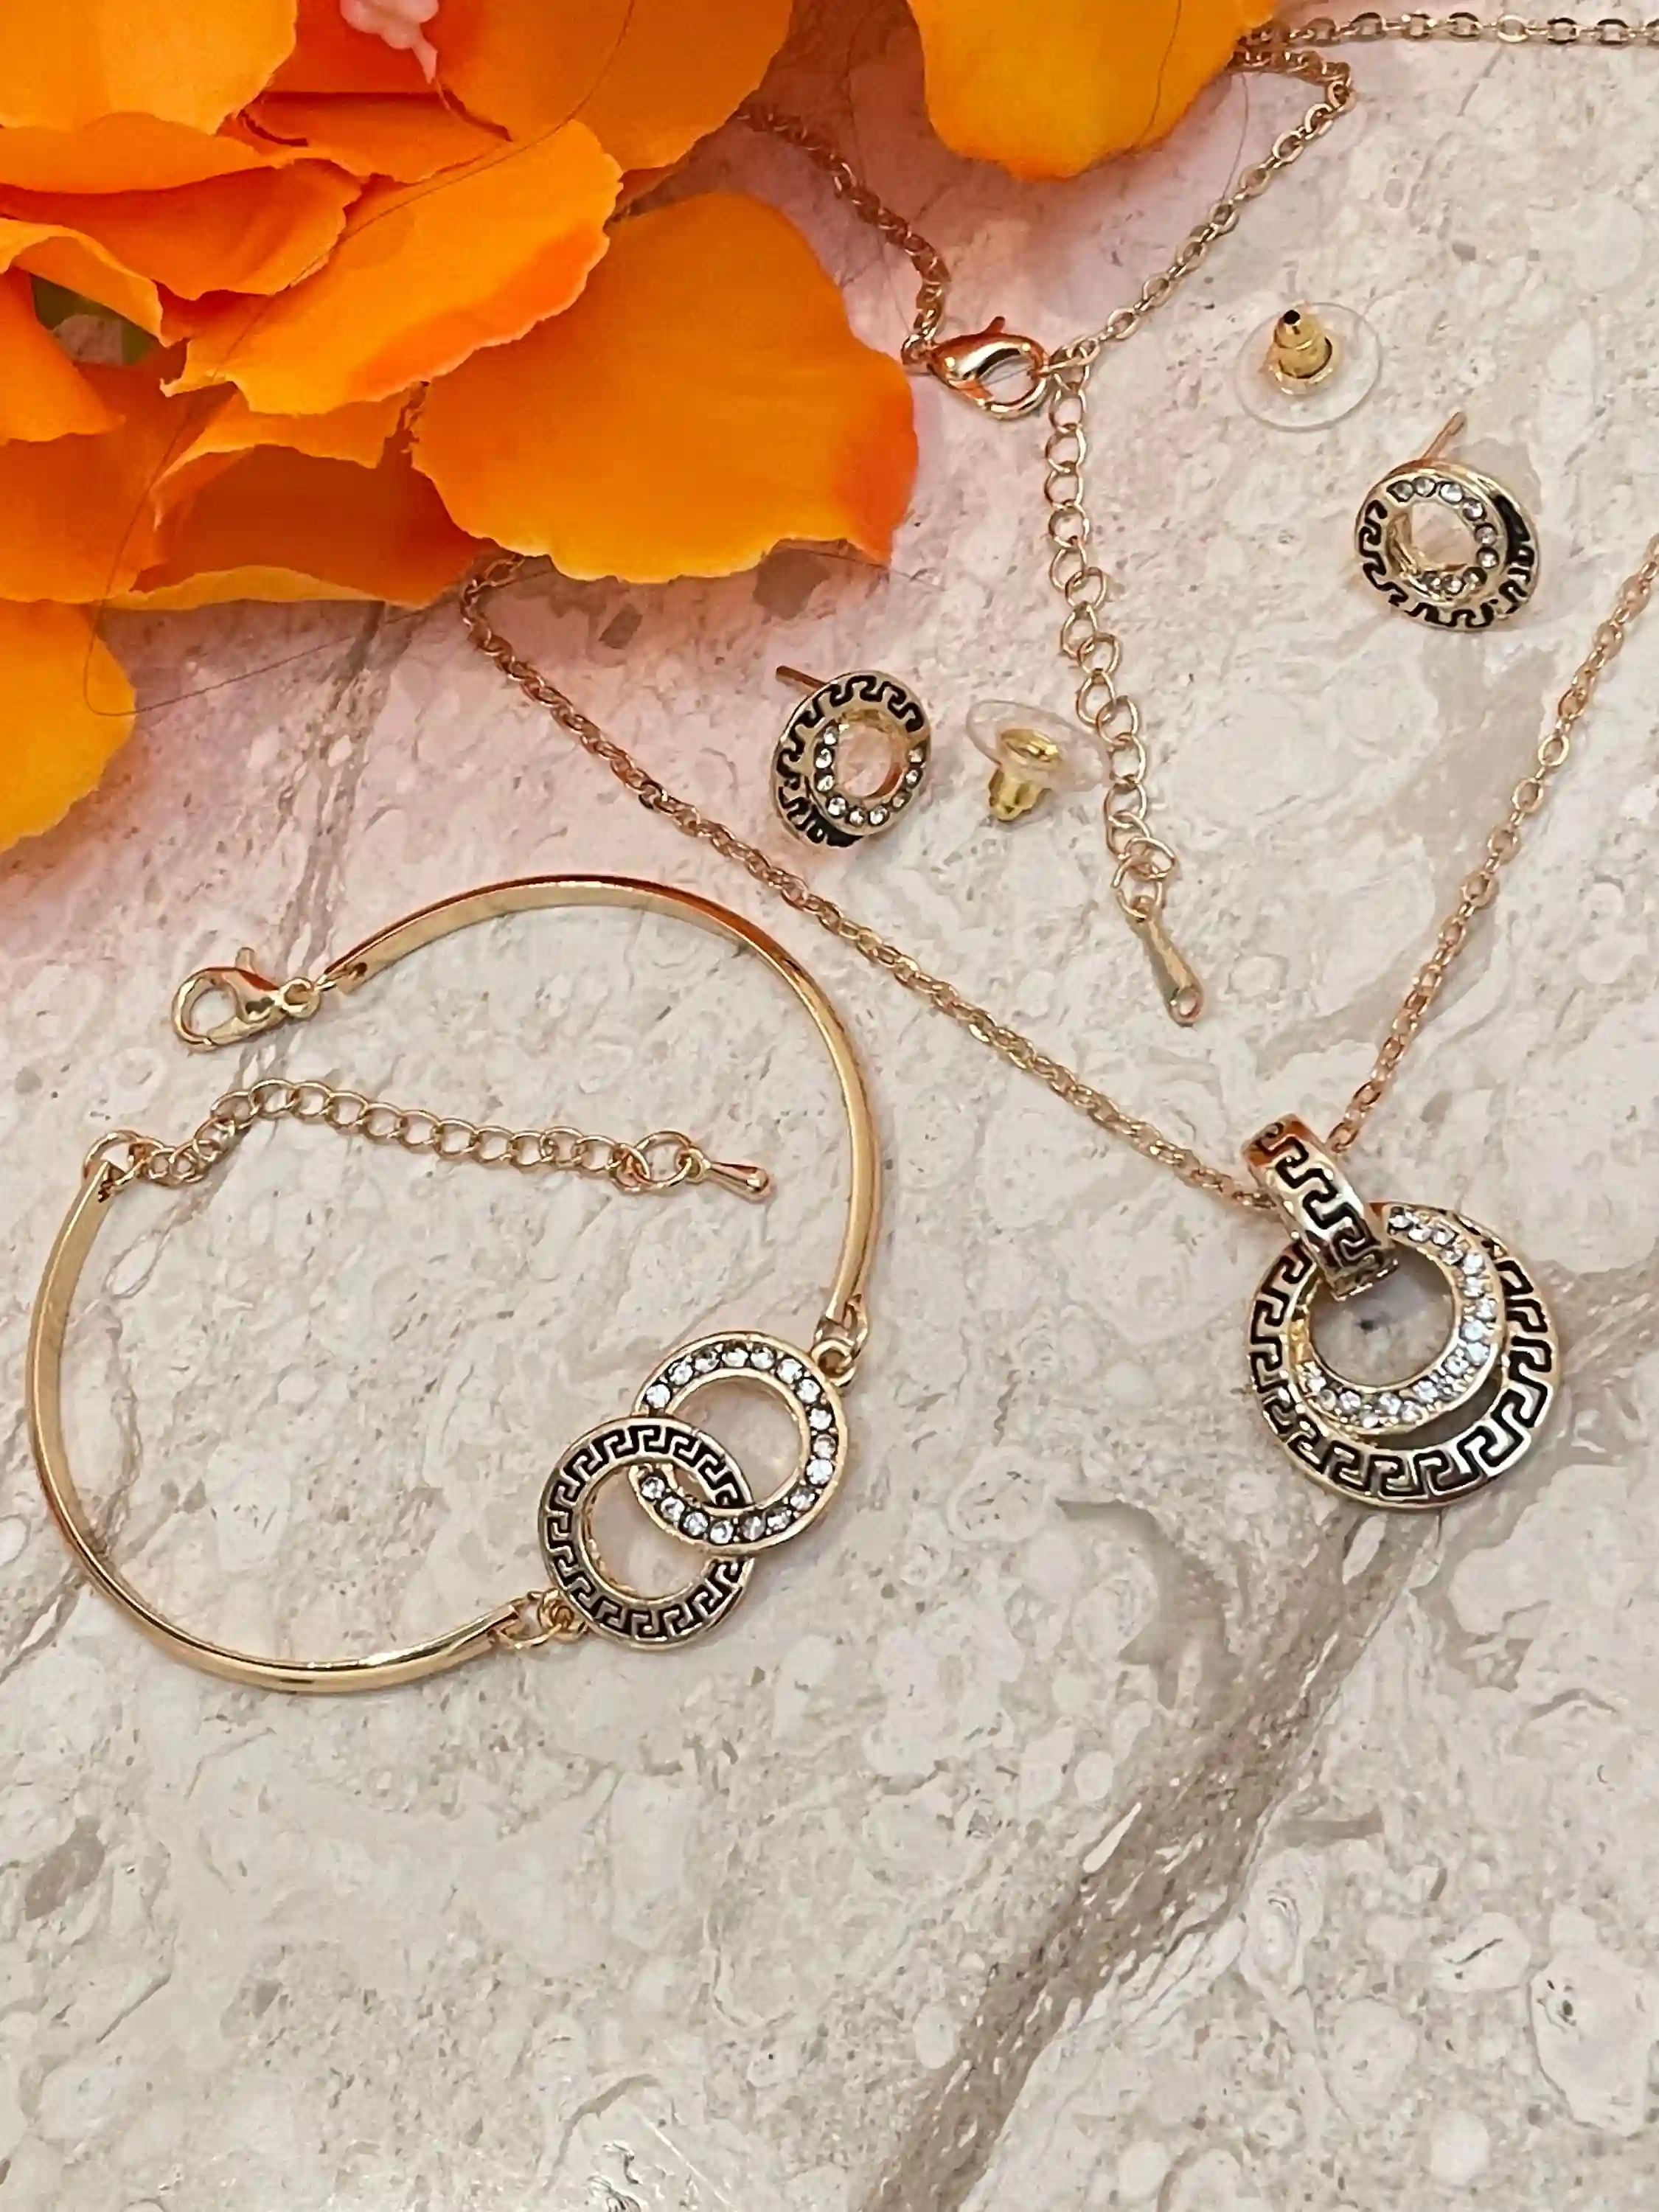 Greek Gold Jewelry SET, Greek Key Necklace, Meander Pendant, Greek Key Bracelet & Meander Earrings, Yellow Gold Jewelry, 86 CZ HANDSET 